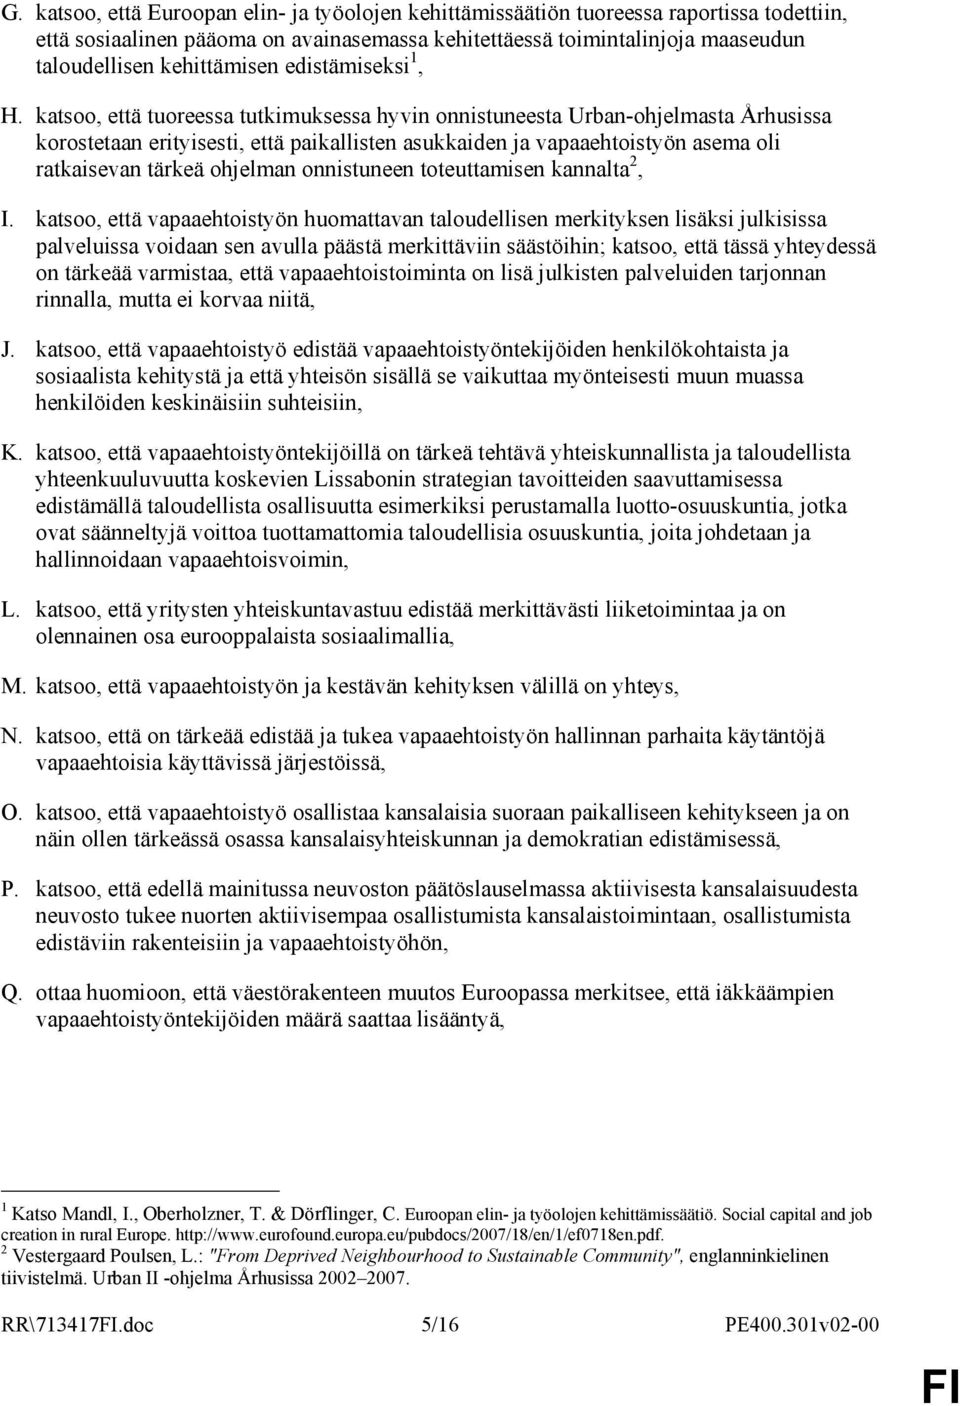 katsoo, että tuoreessa tutkimuksessa hyvin onnistuneesta Urban-ohjelmasta Århusissa korostetaan erityisesti, että paikallisten asukkaiden ja vapaaehtoistyön asema oli ratkaisevan tärkeä ohjelman